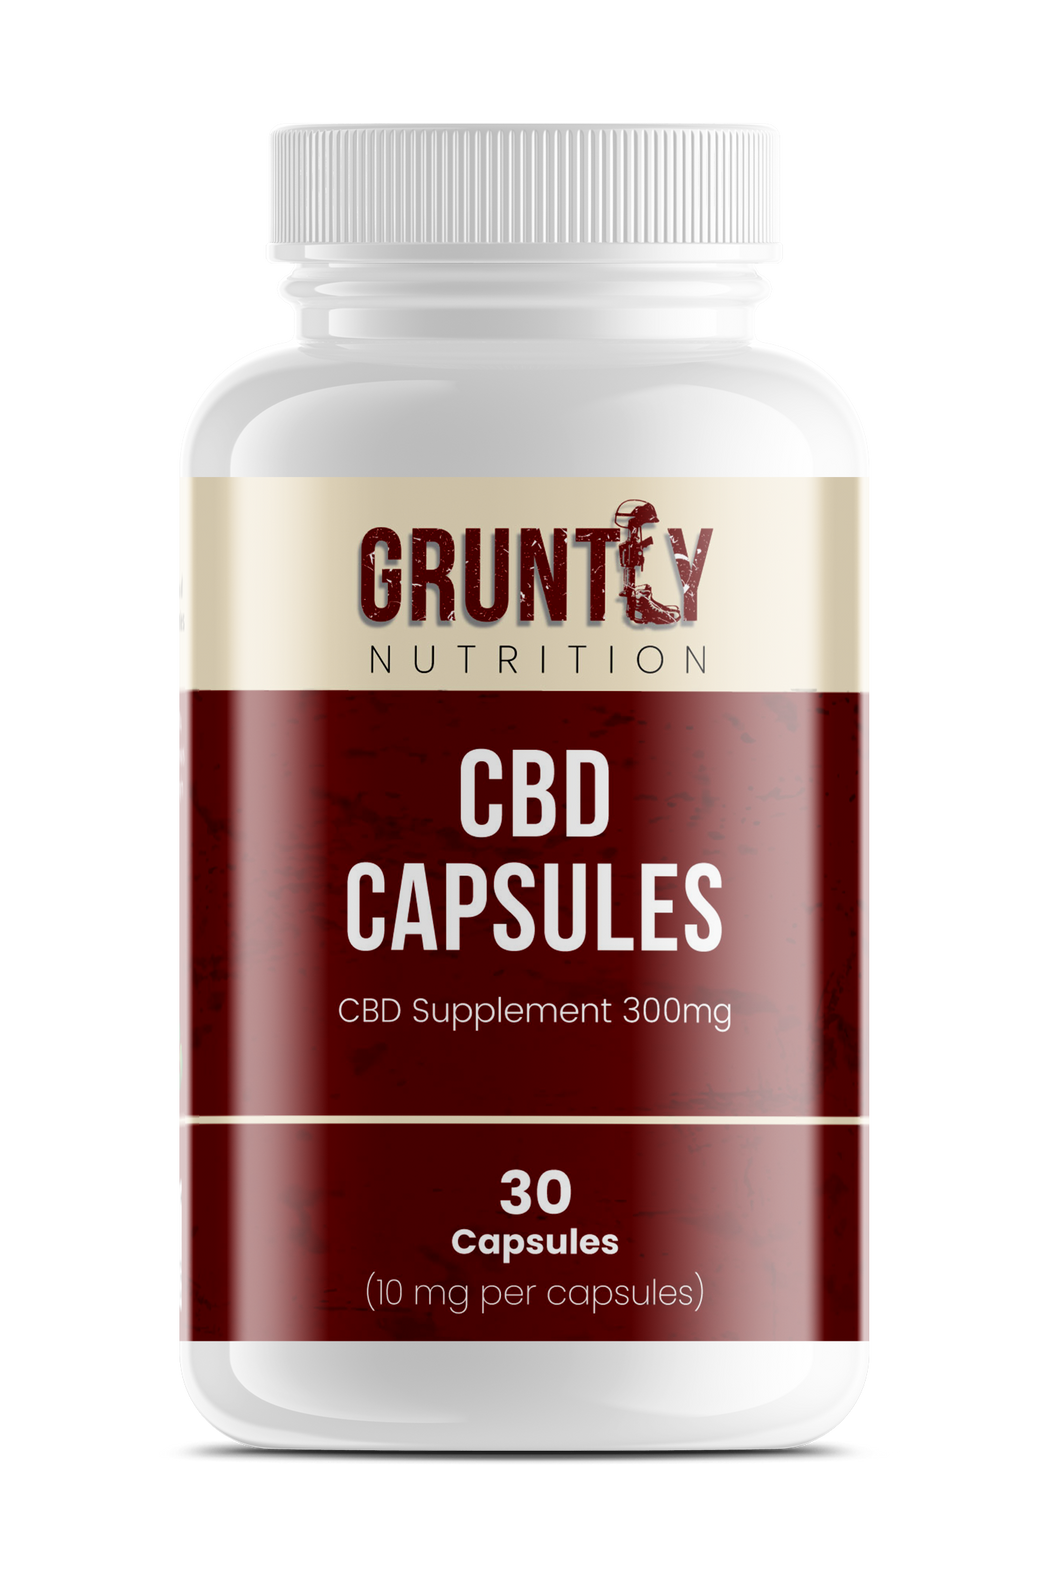 C+B+D Capsules - CBD Supplement - 300mg